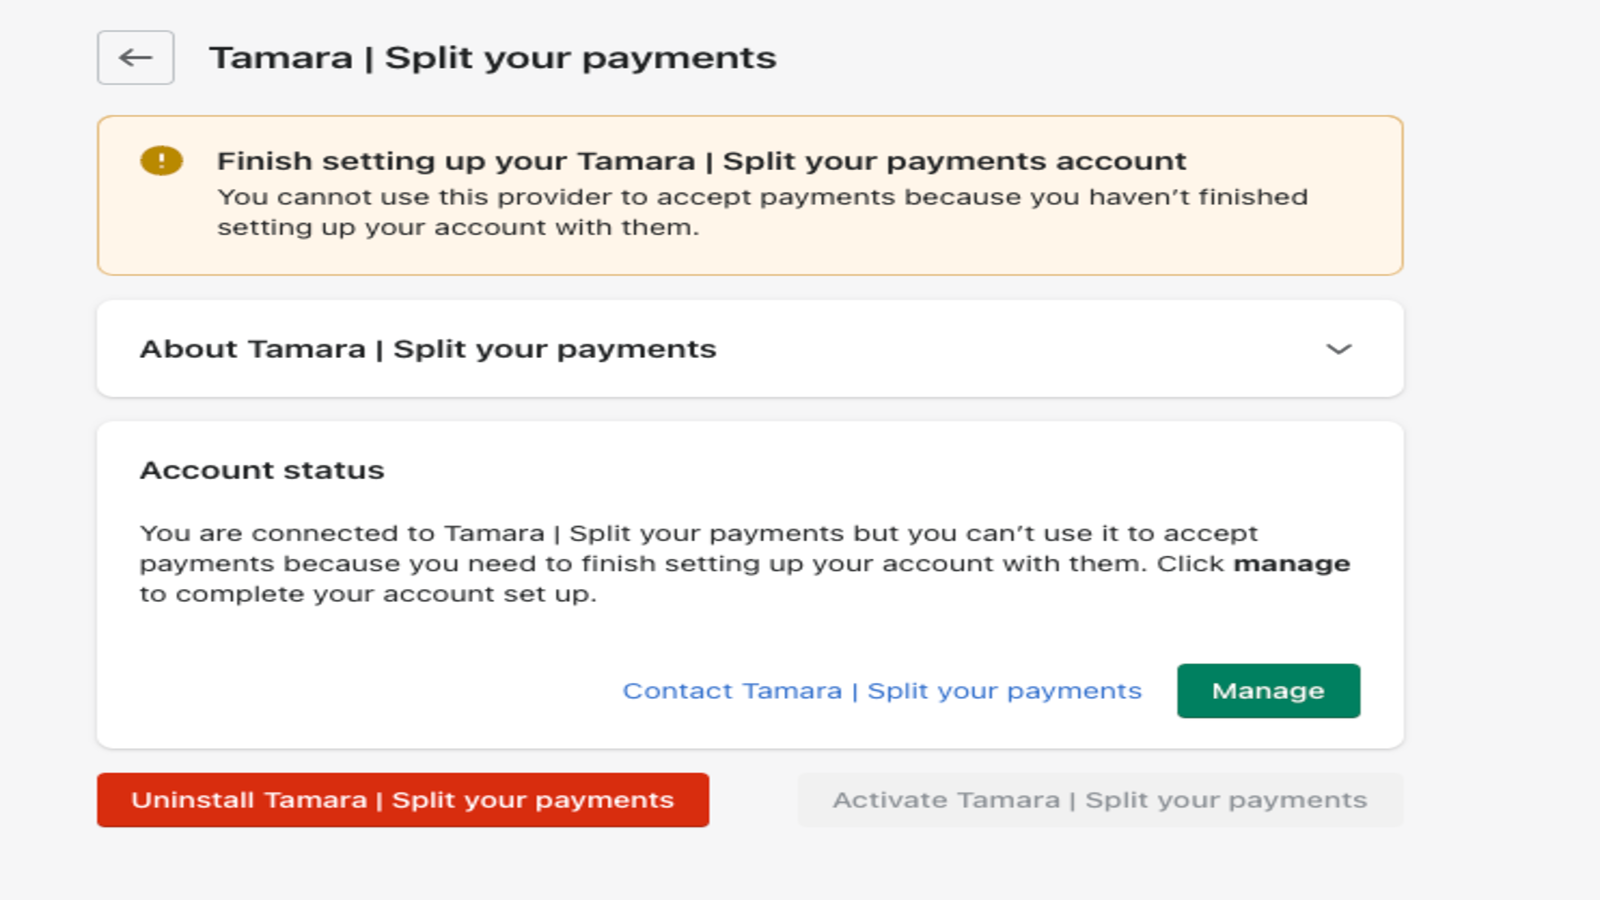 Select Tamara | Split your payments